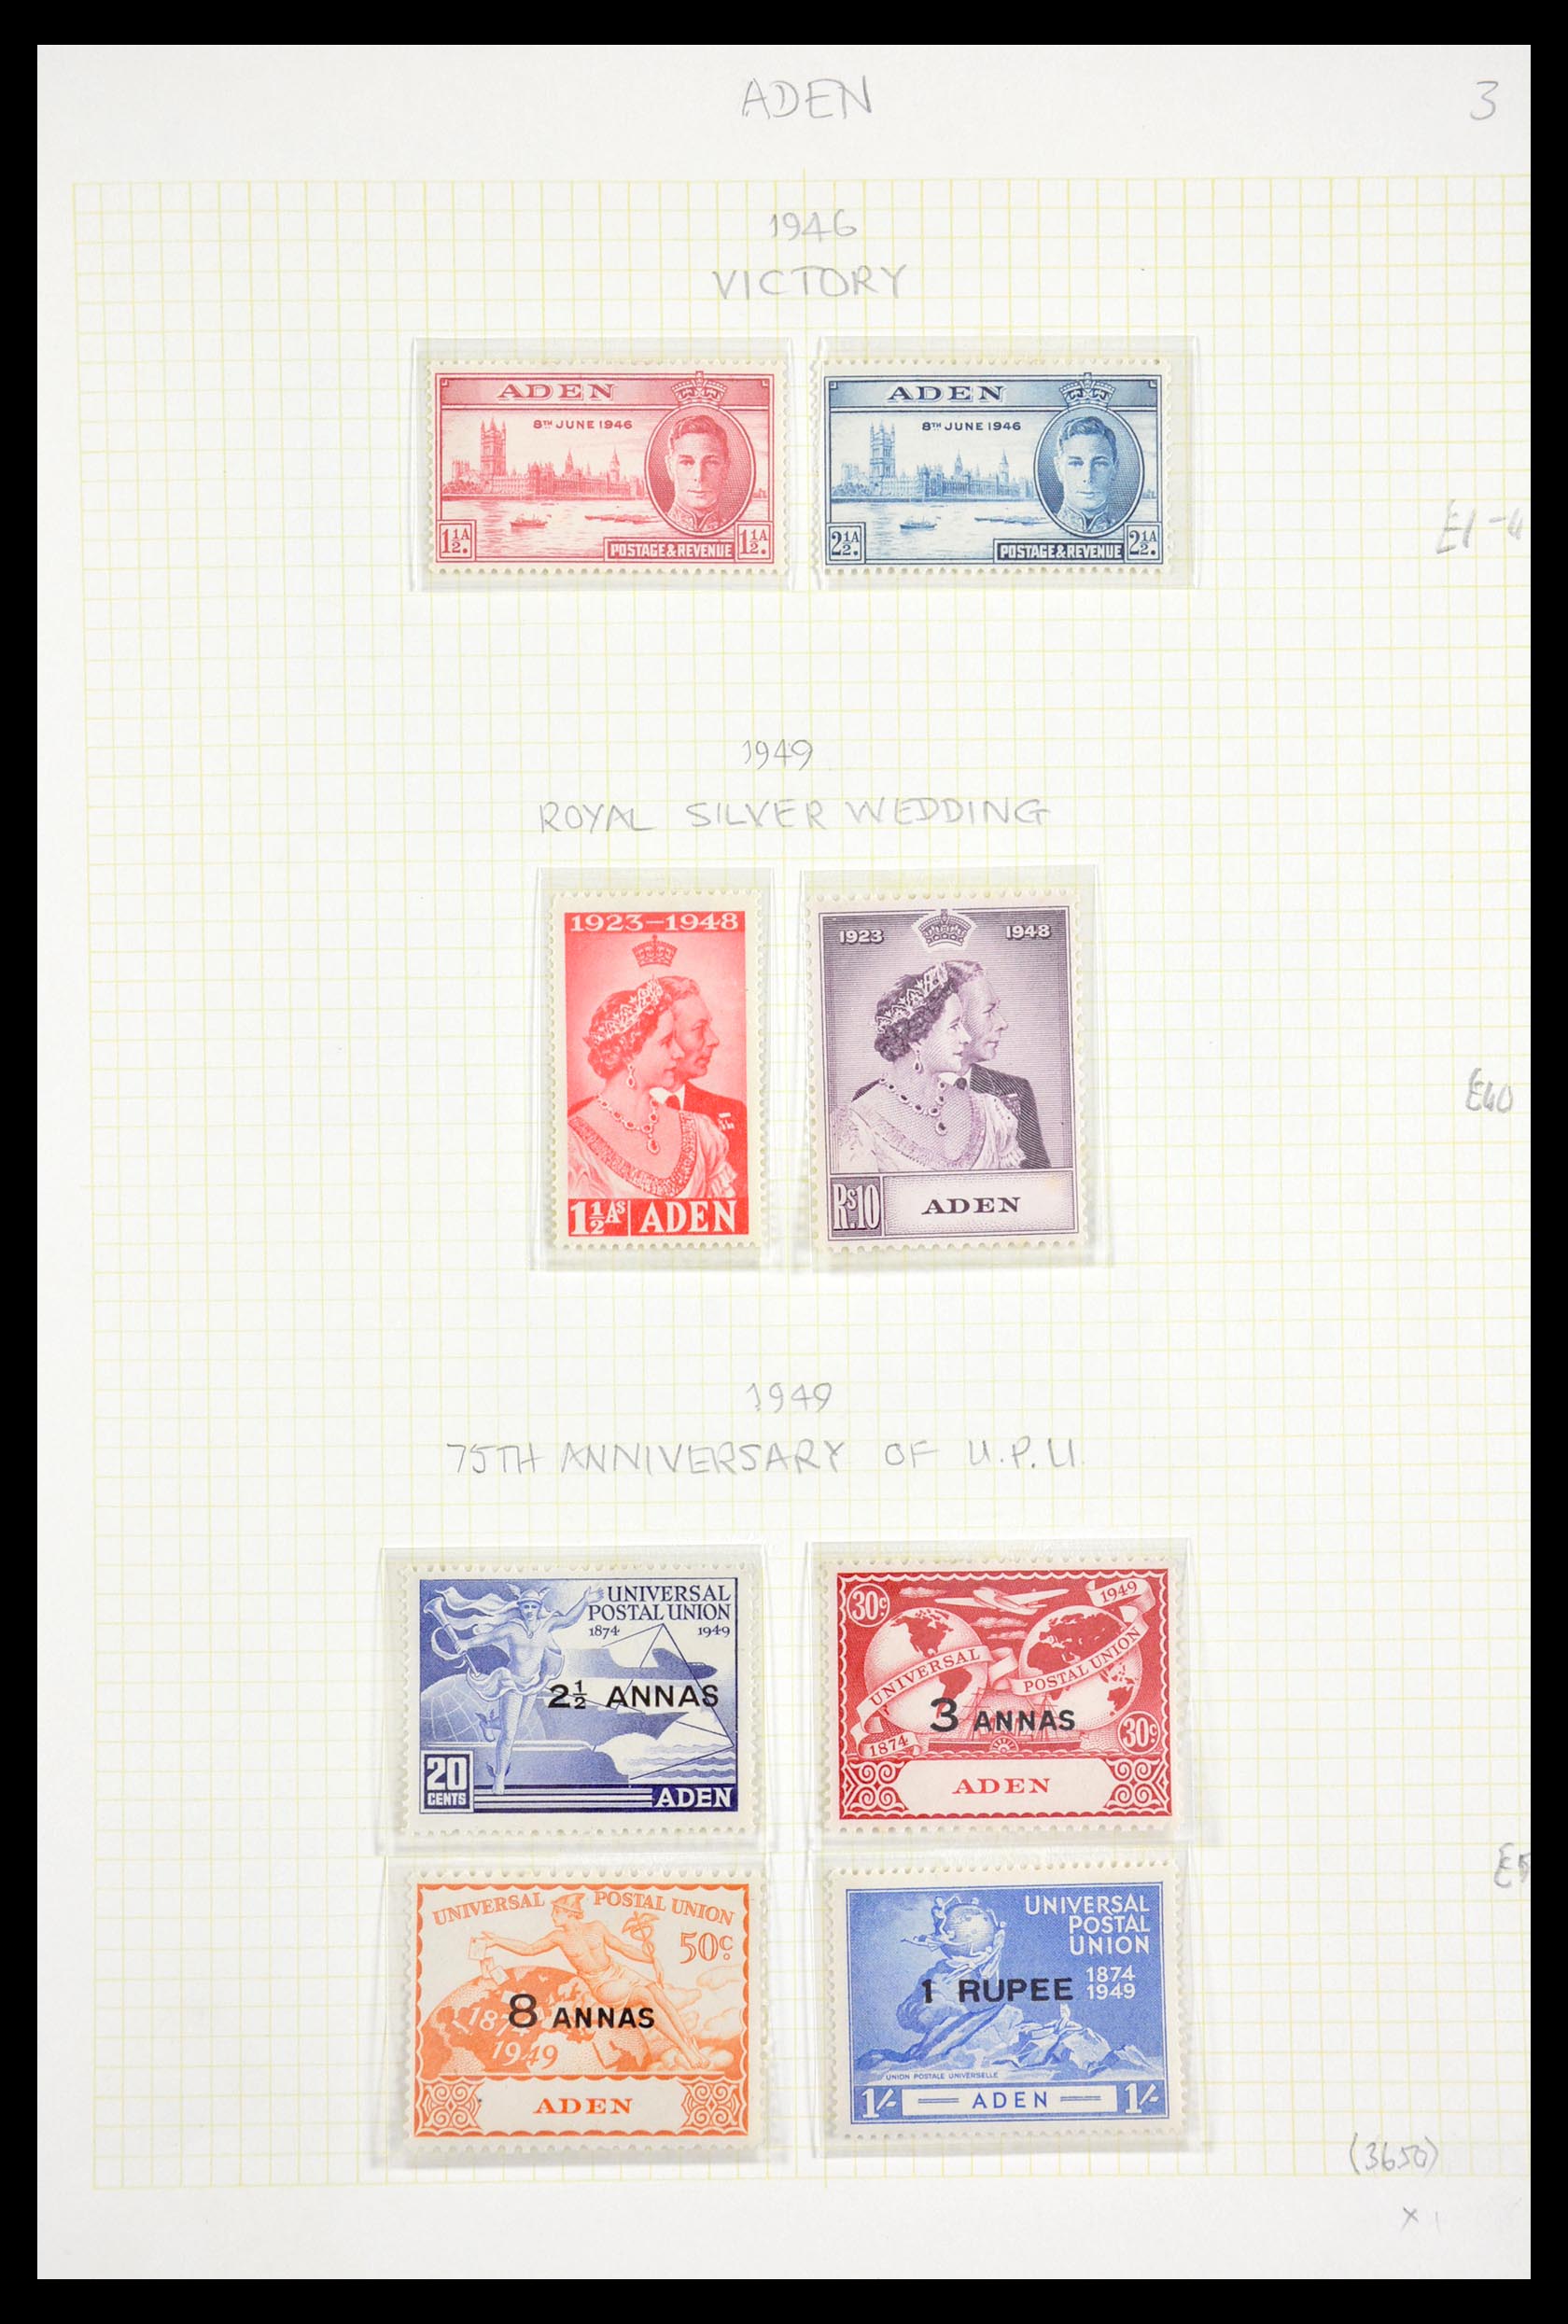 29567 003 - 29567 Aden 1937-1967.